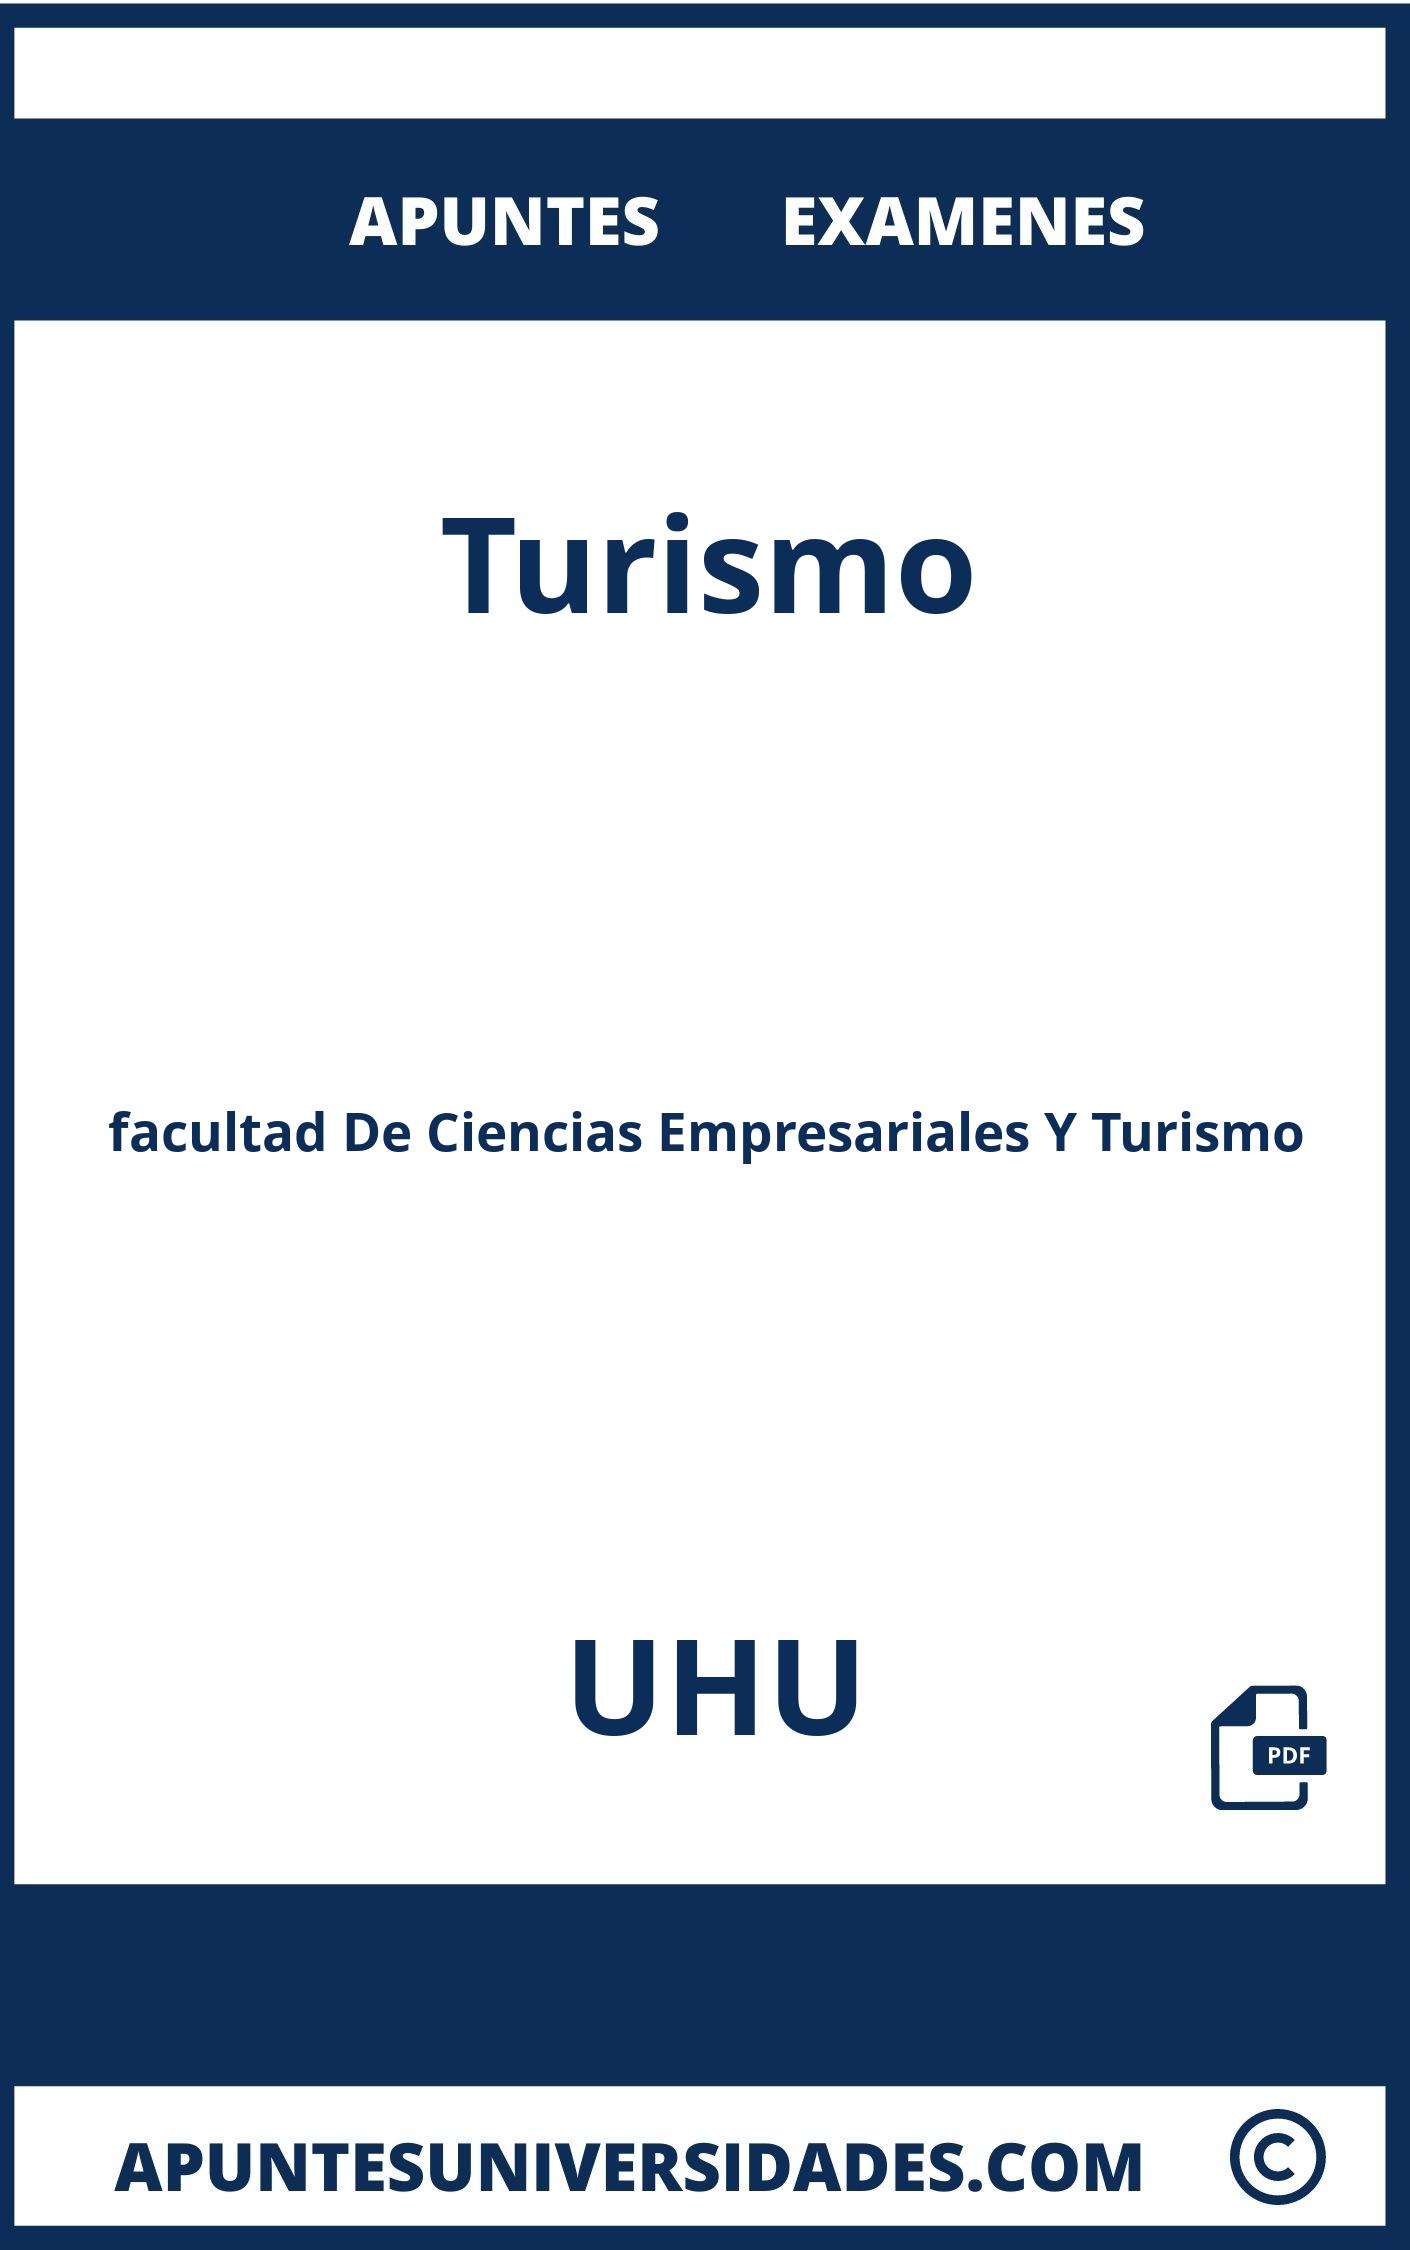 Apuntes y Examenes de Turismo UHU